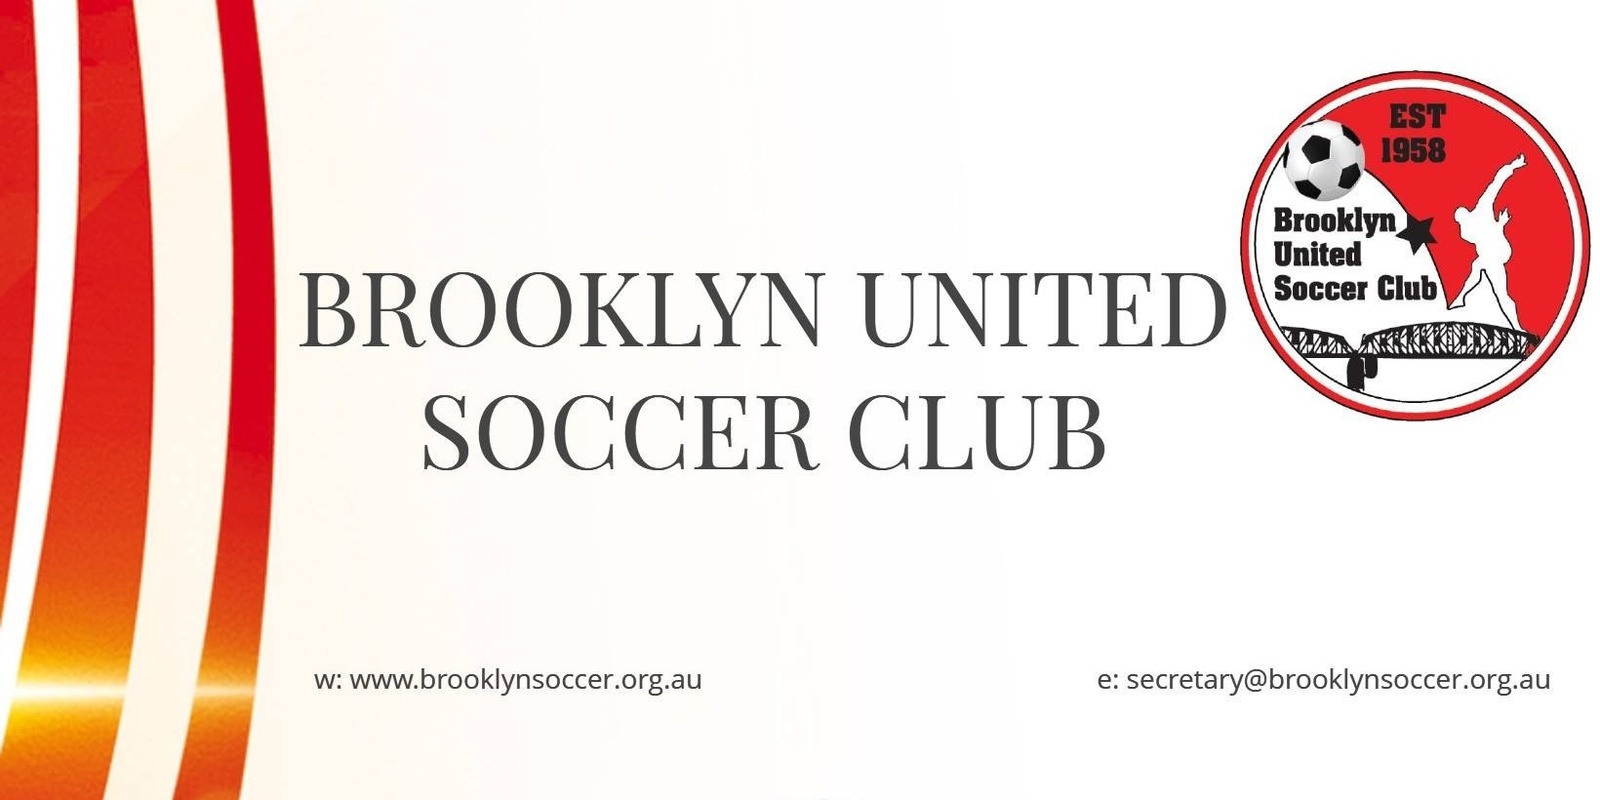 Brooklyn United Soccer Club's banner